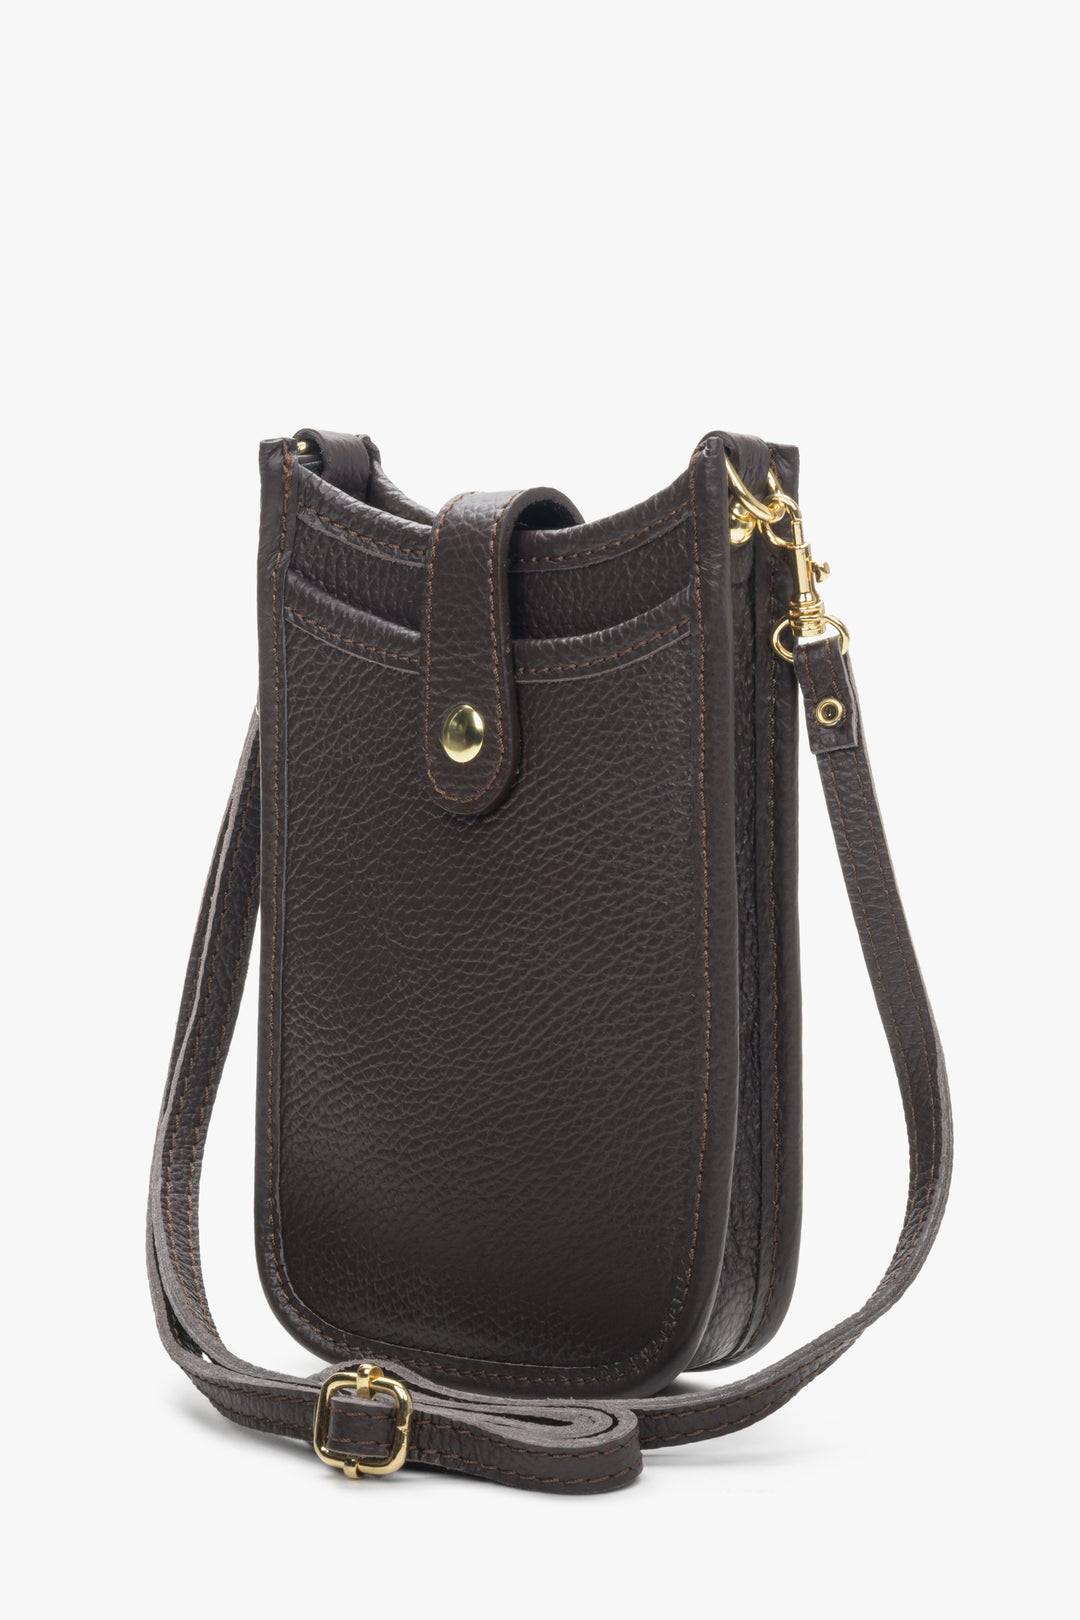 Women's dark brown  leather smartphone purse.